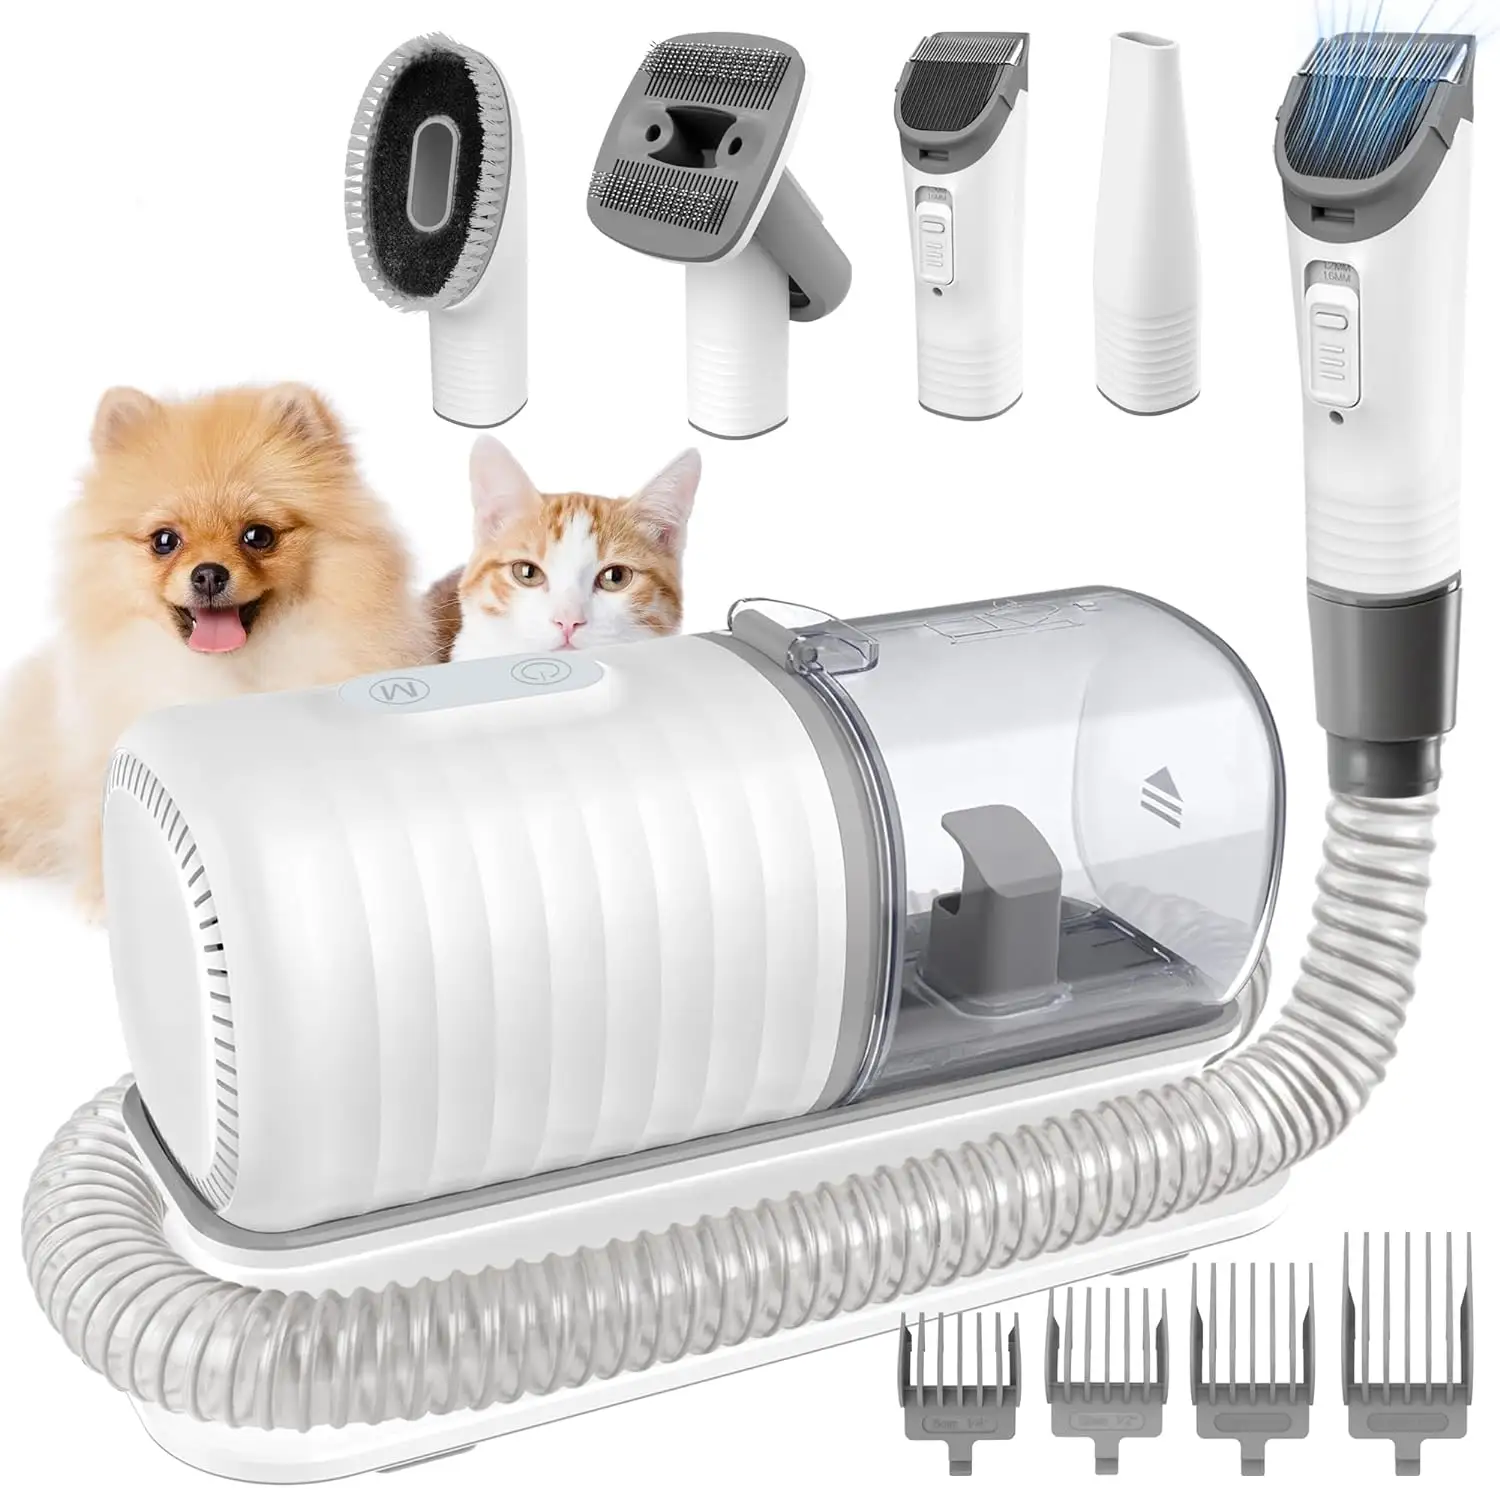 Polifunzionale Pro cane gatto peli rimuovere elettrico Trimmer strumento di pulizia casa portatile Pet Vaccum Cleaner Saloon Grooming set Kit